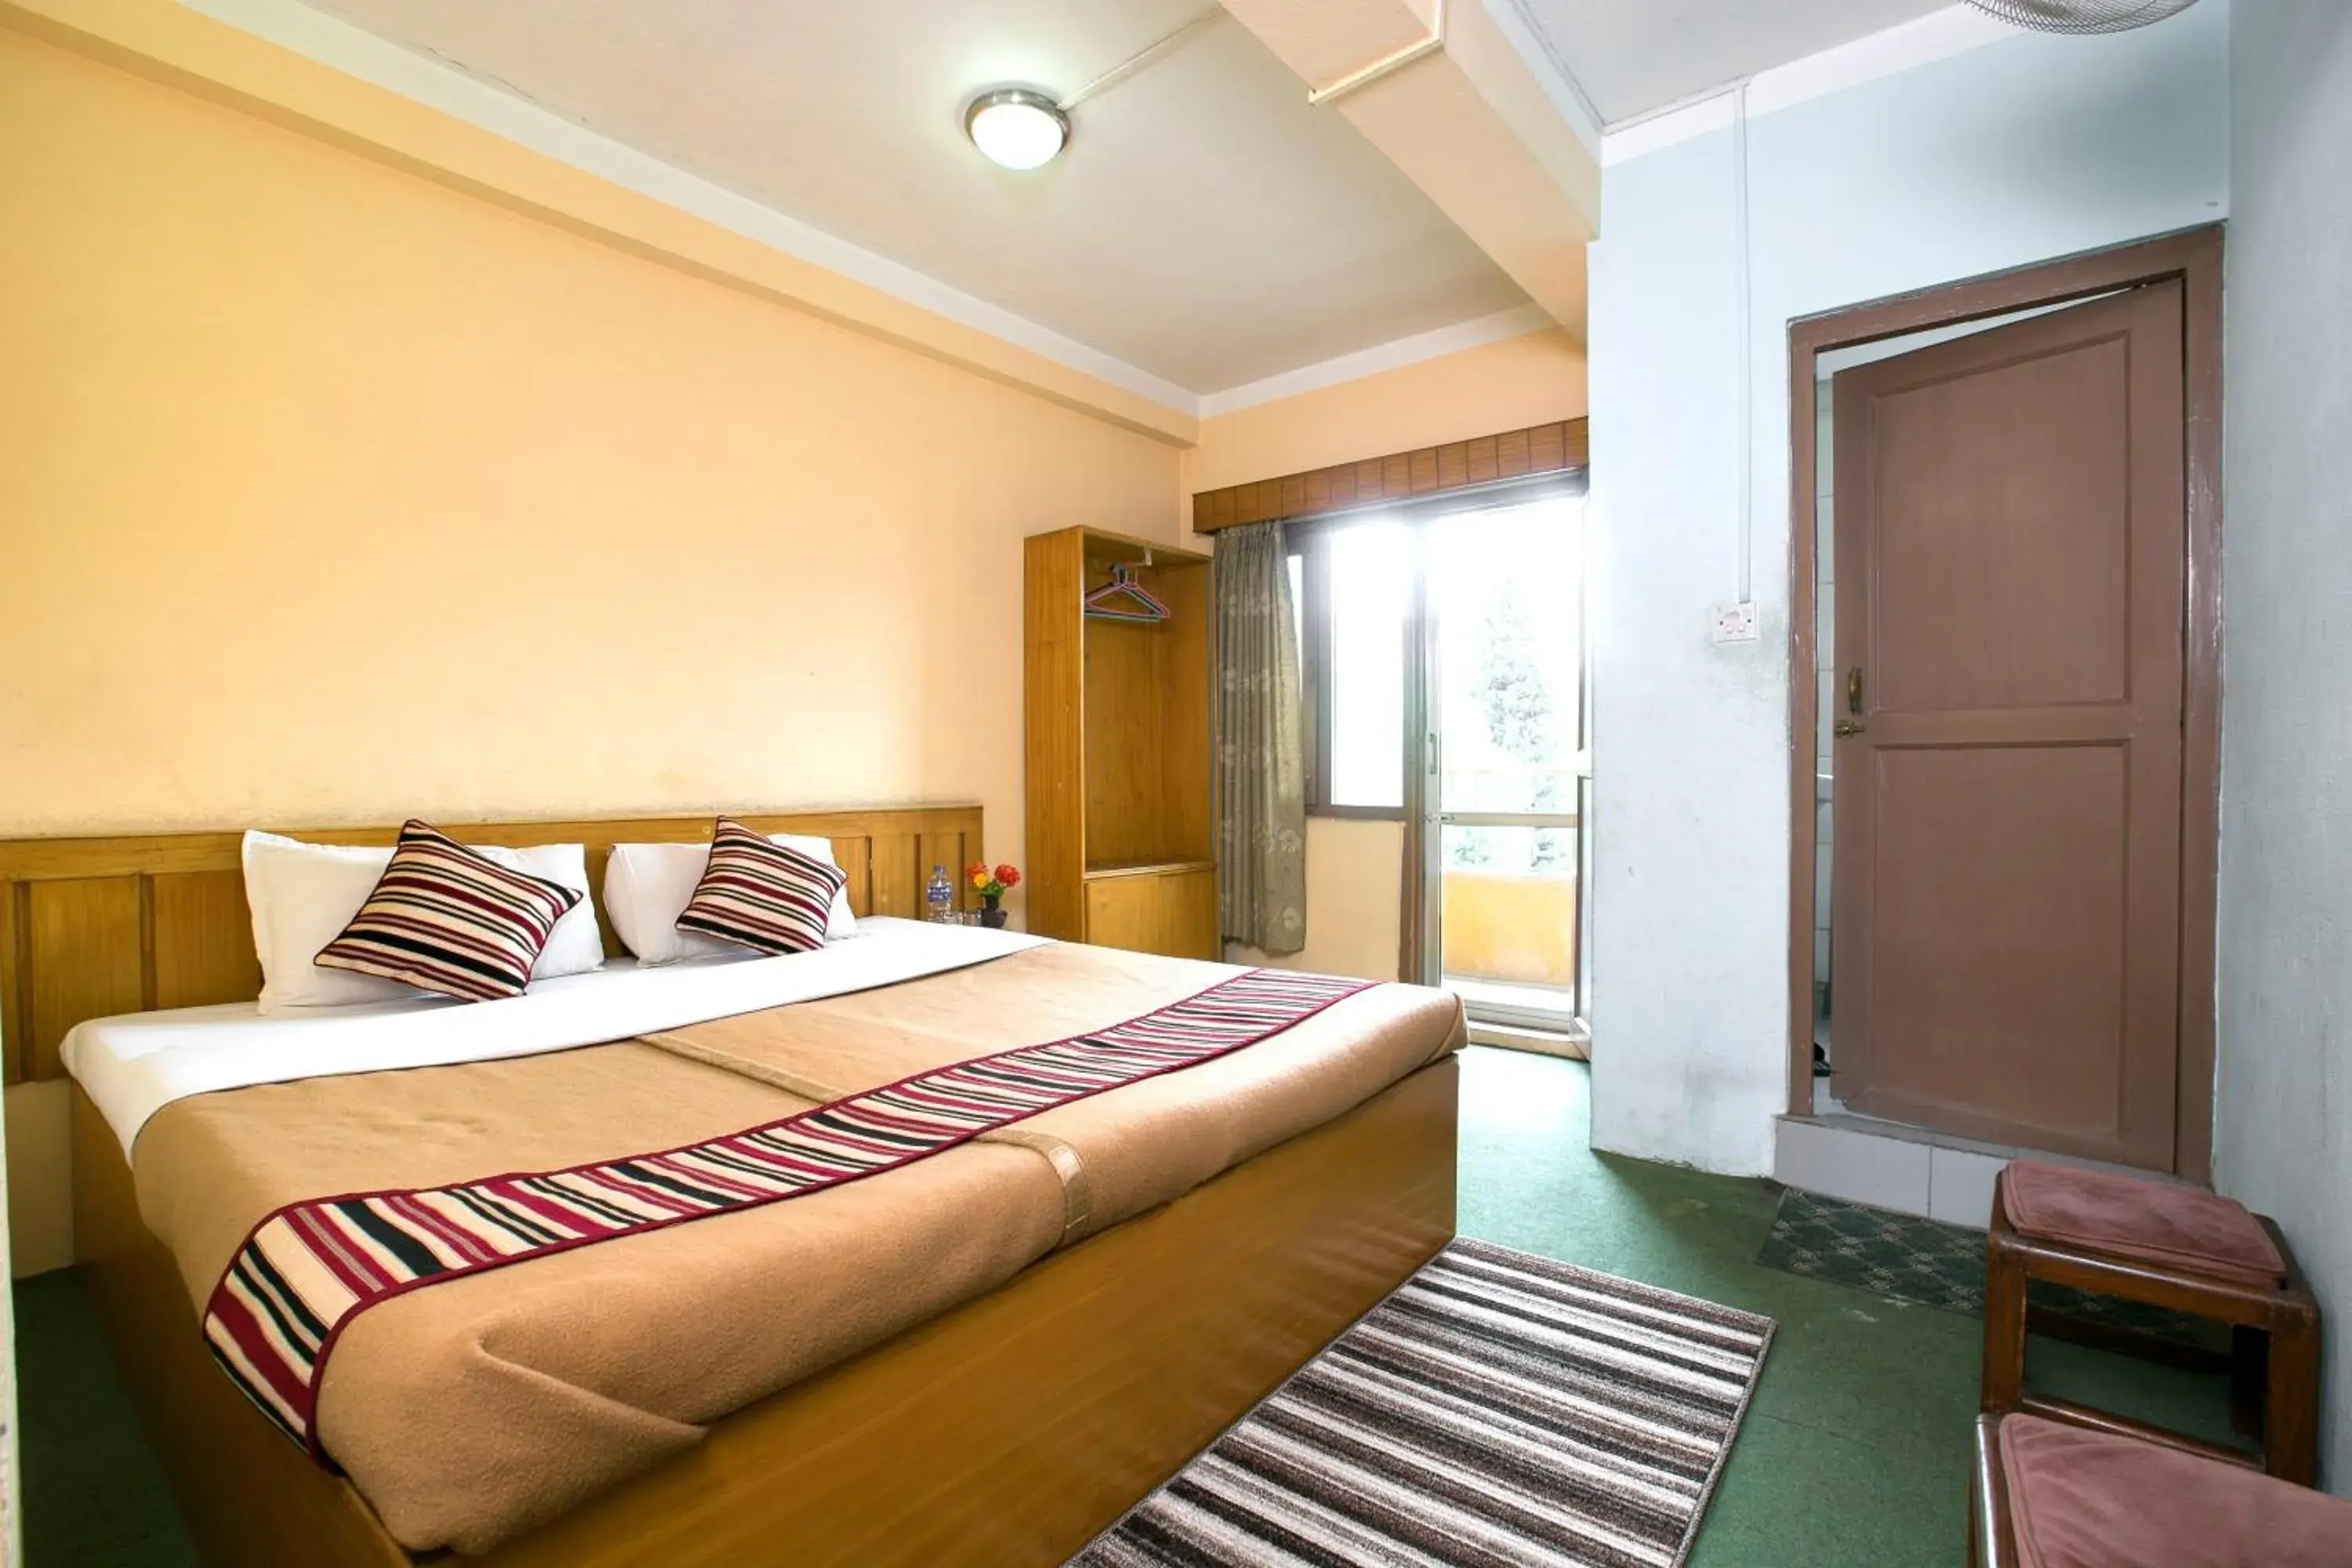 Bedroom, Room Photo in Hotel Nana